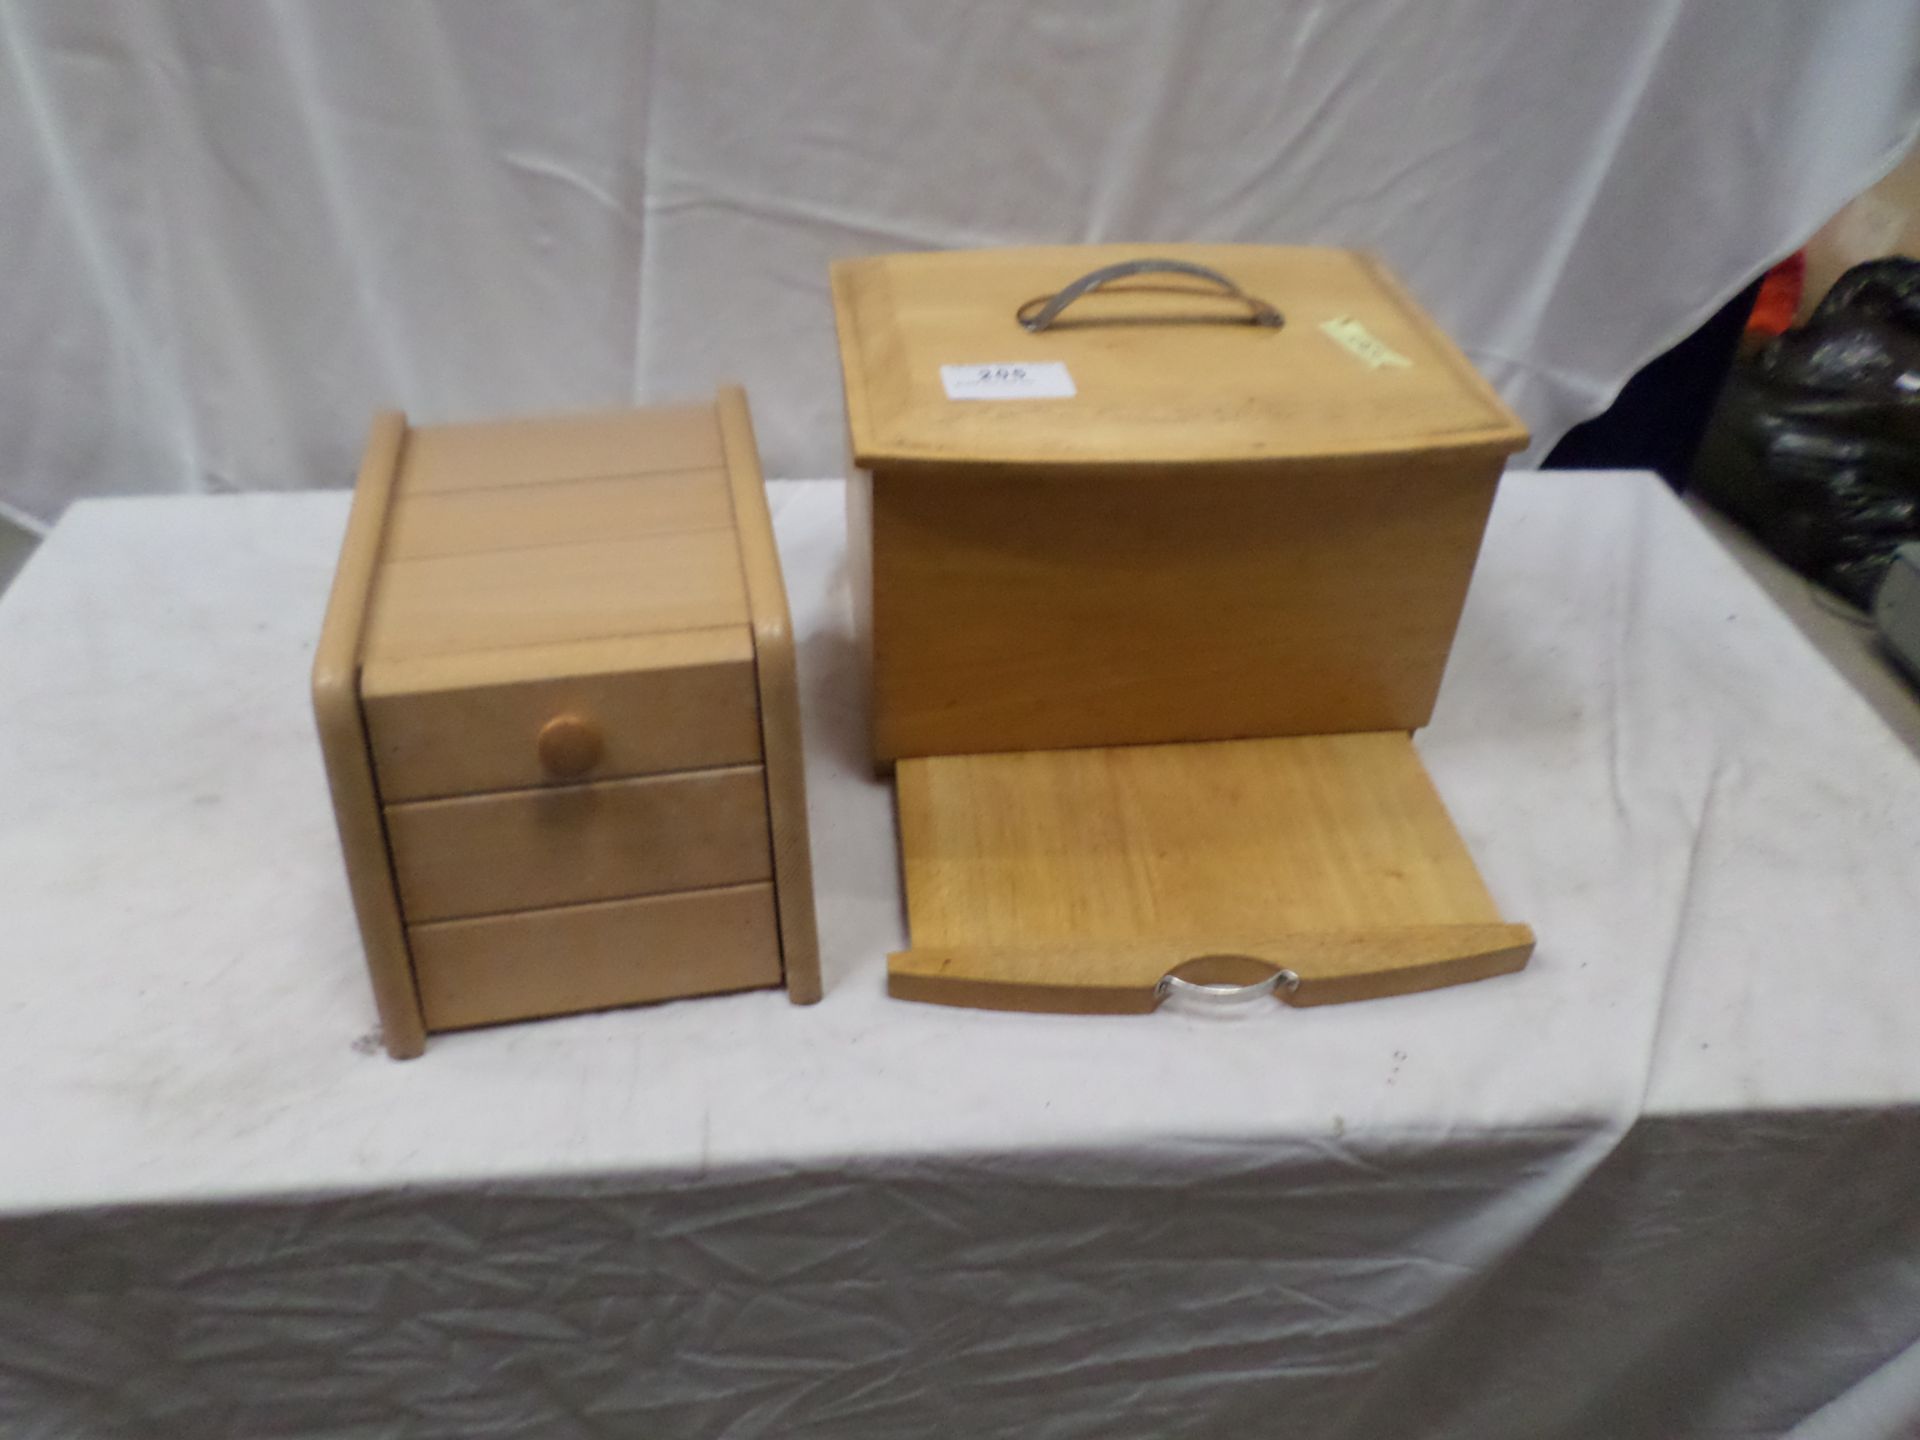 Bread bin and box